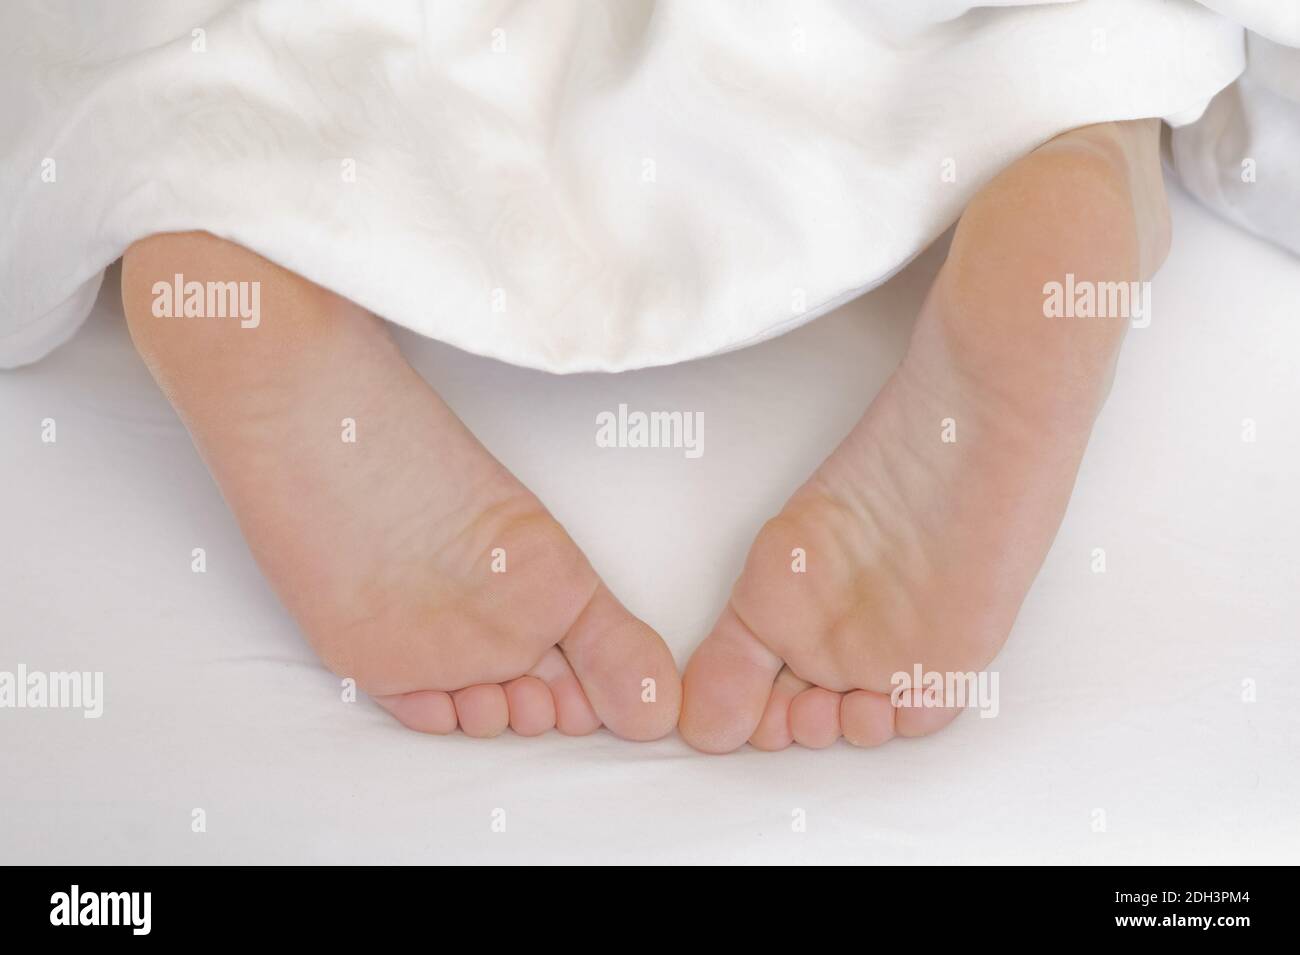 25 -30 jährige Frau schläft im Bett, zeigt ihre Füsse, MR:Yes Stock Photo